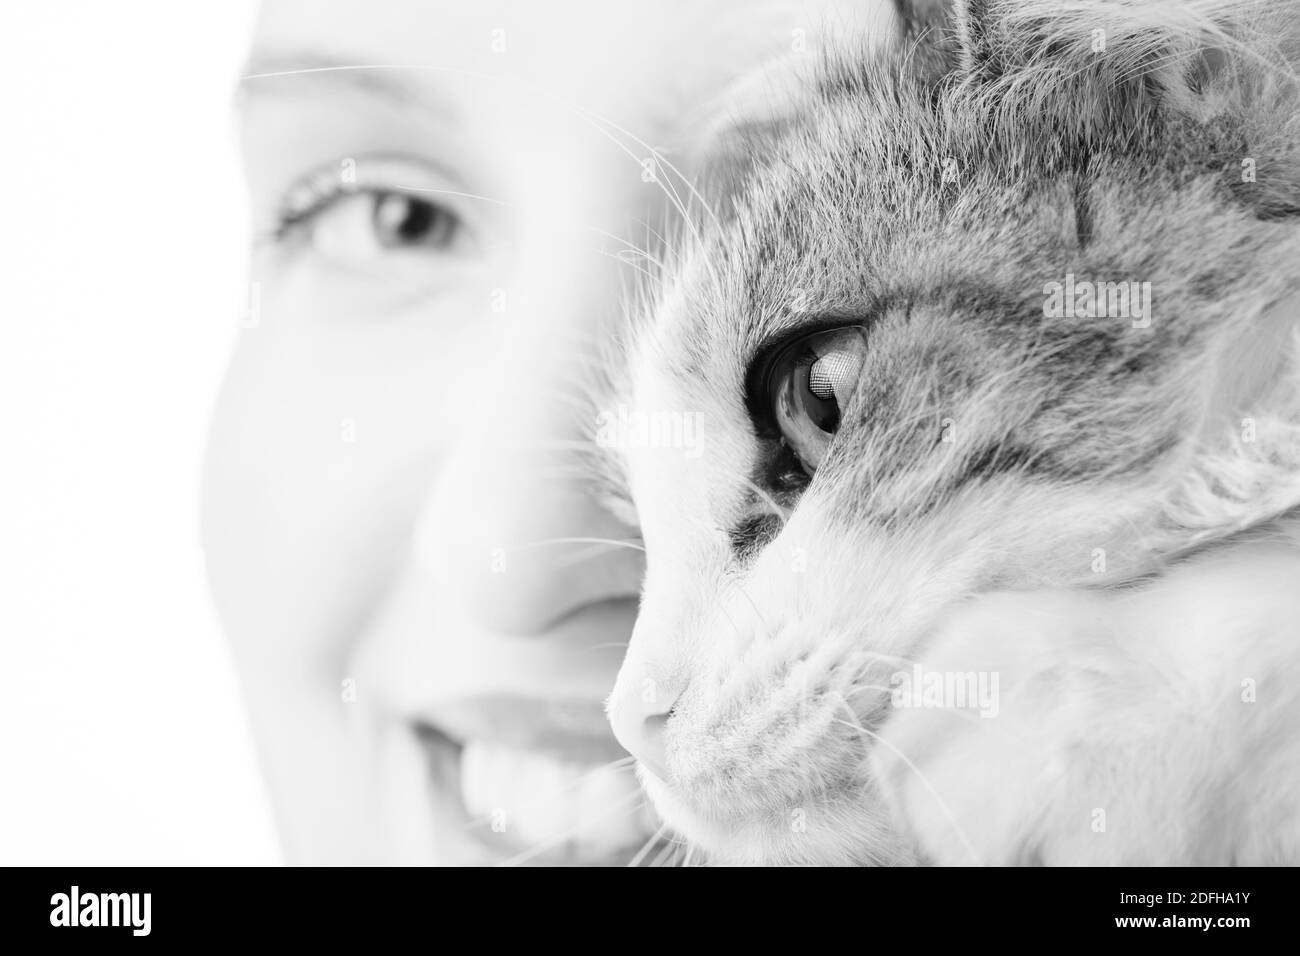 visage de femme souriant avec portrait de chat en gros plan sur fond blanc, monochrome Banque D'Images